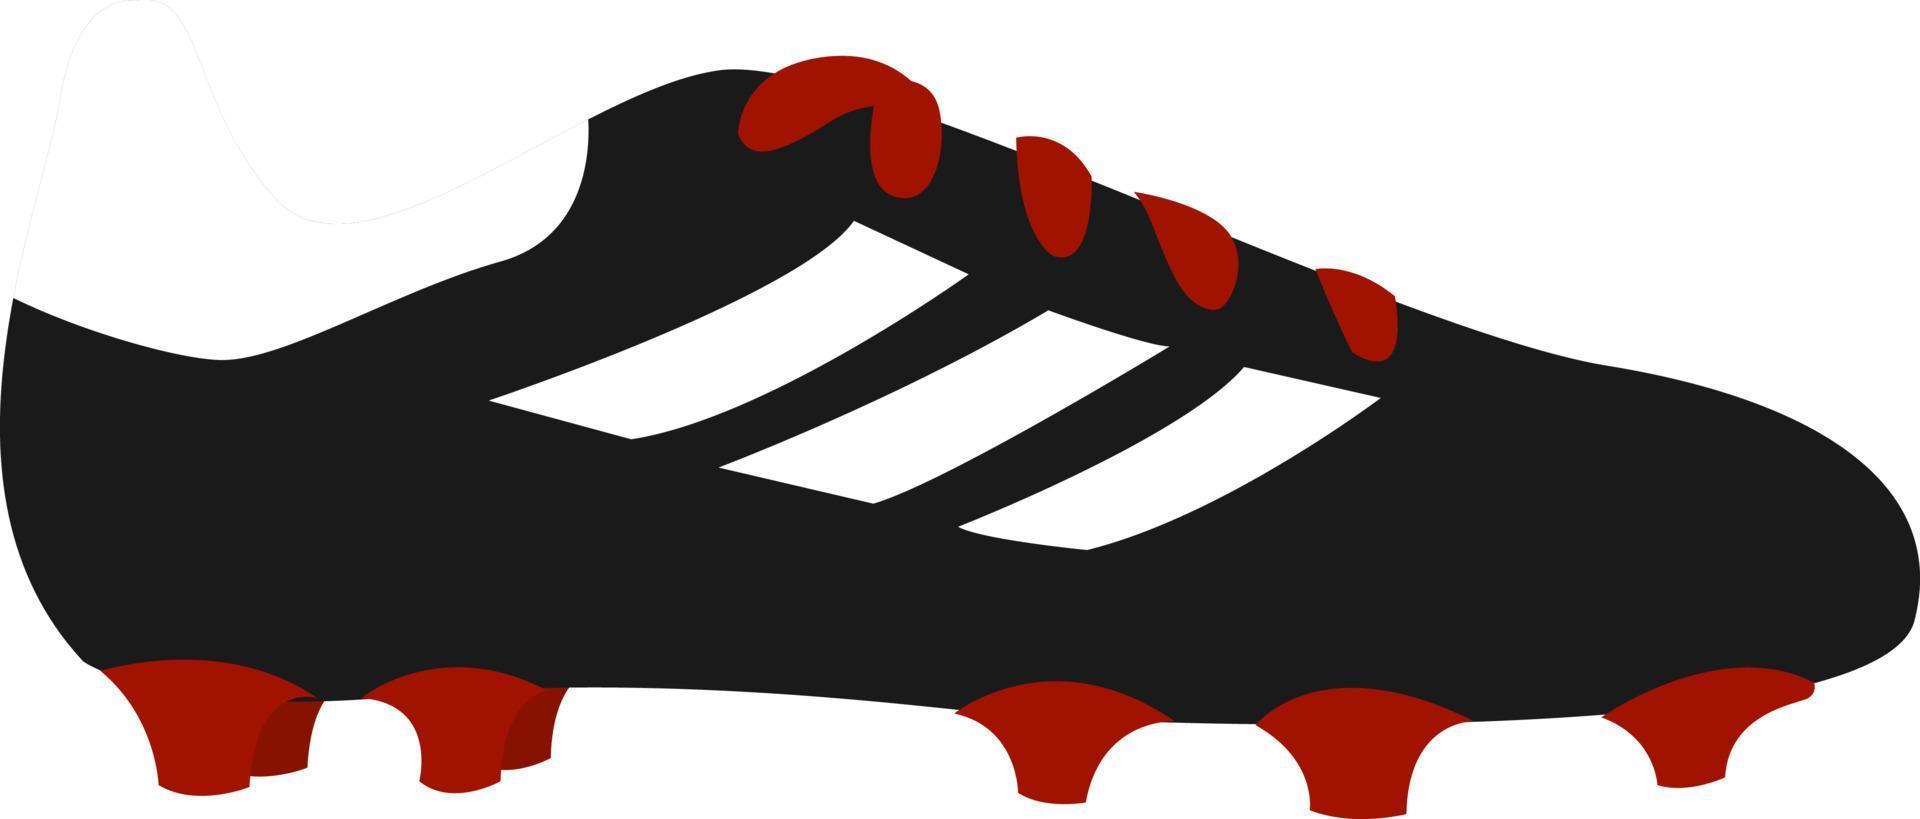 Tacos de fútbol, ilustración, vector sobre fondo blanco.